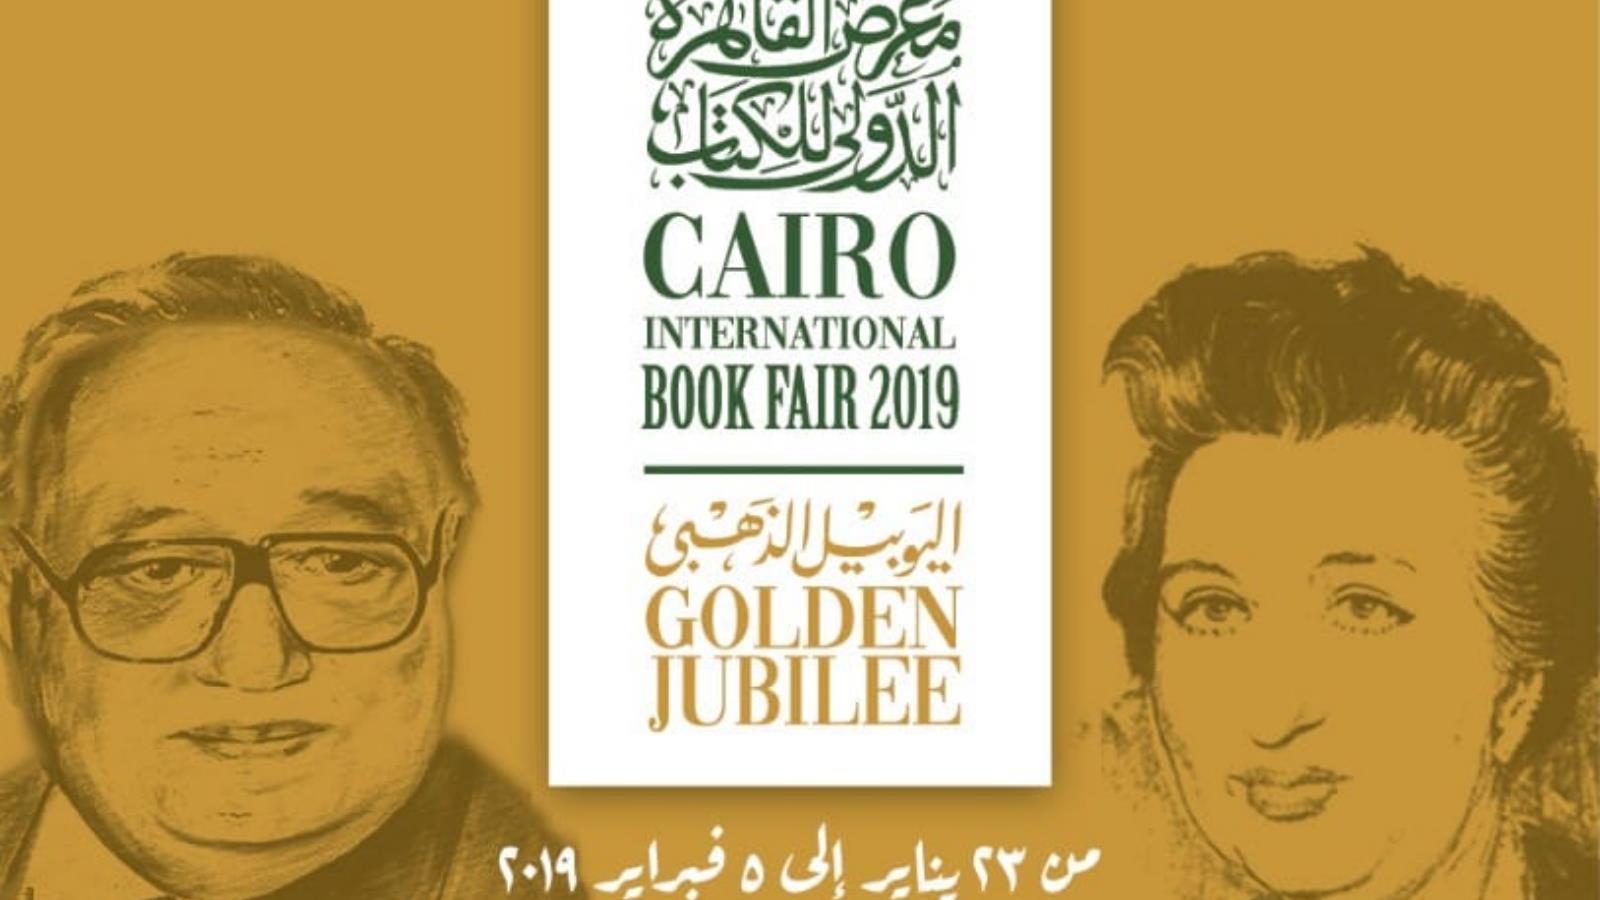 الدورة الخمسون لمعرض القاهرة الدولي للكتاب تقام من 23 يناير/كانون الثاني حتى 5 فبراير/شباط القادم (الجزيرة)